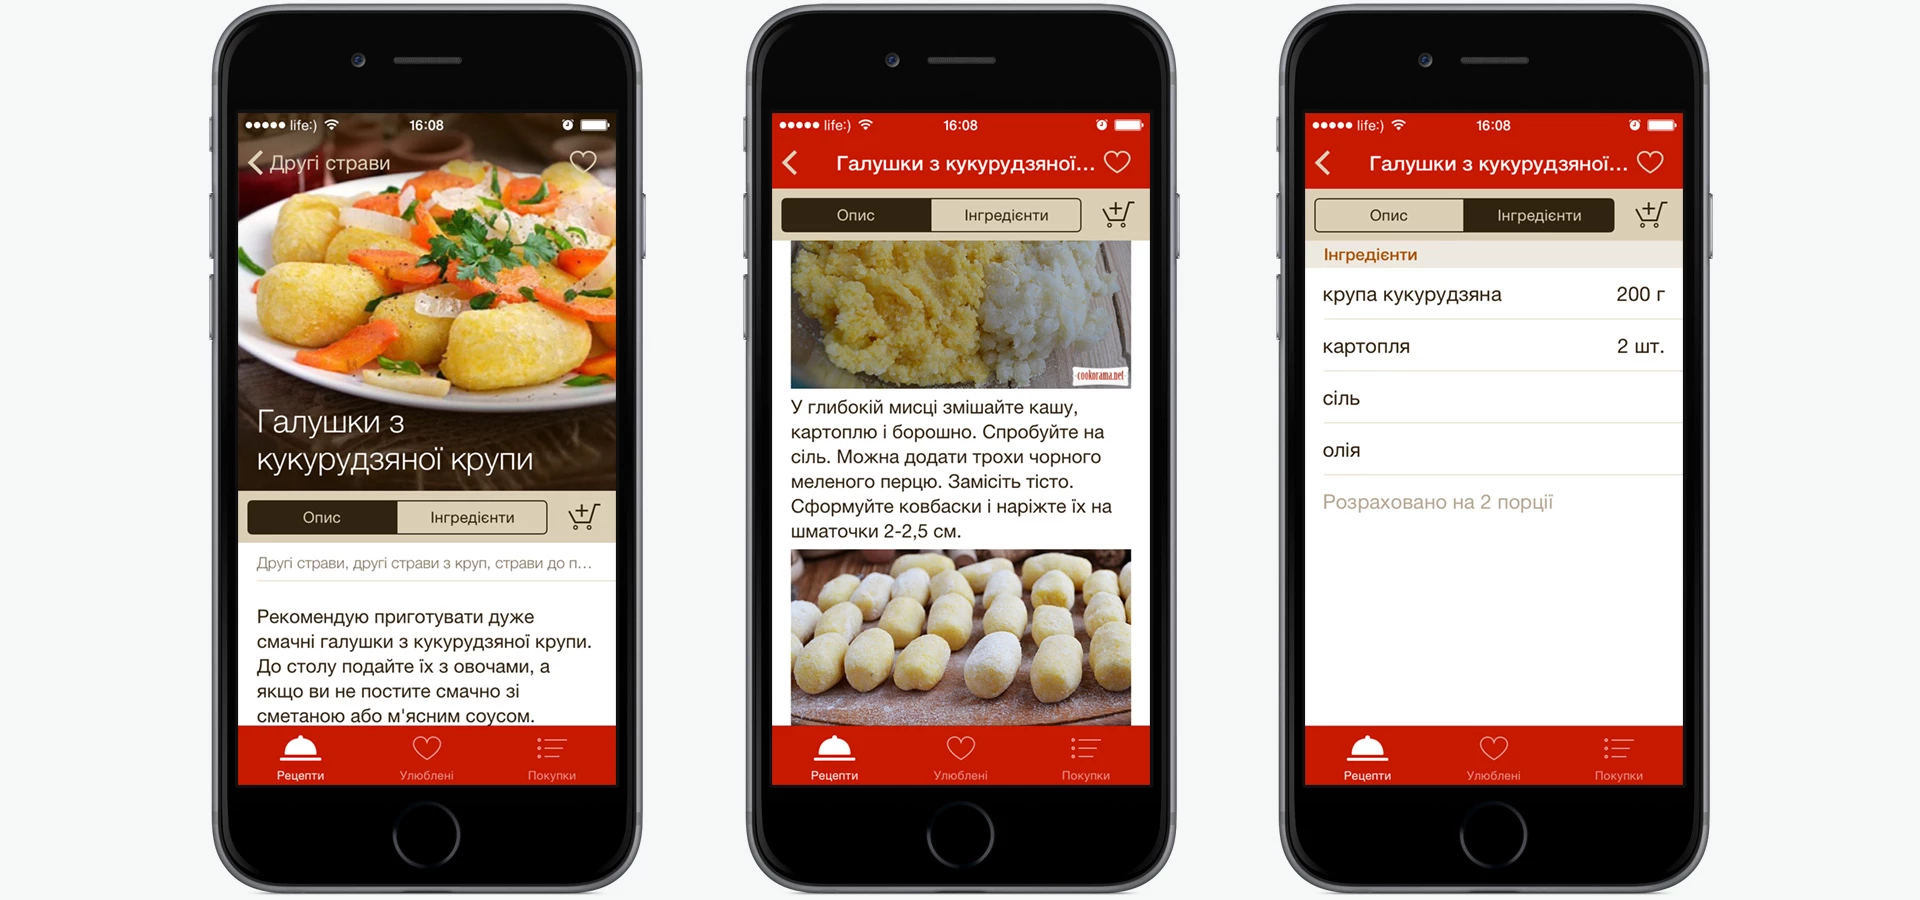 Screens in Cookorama cooking app